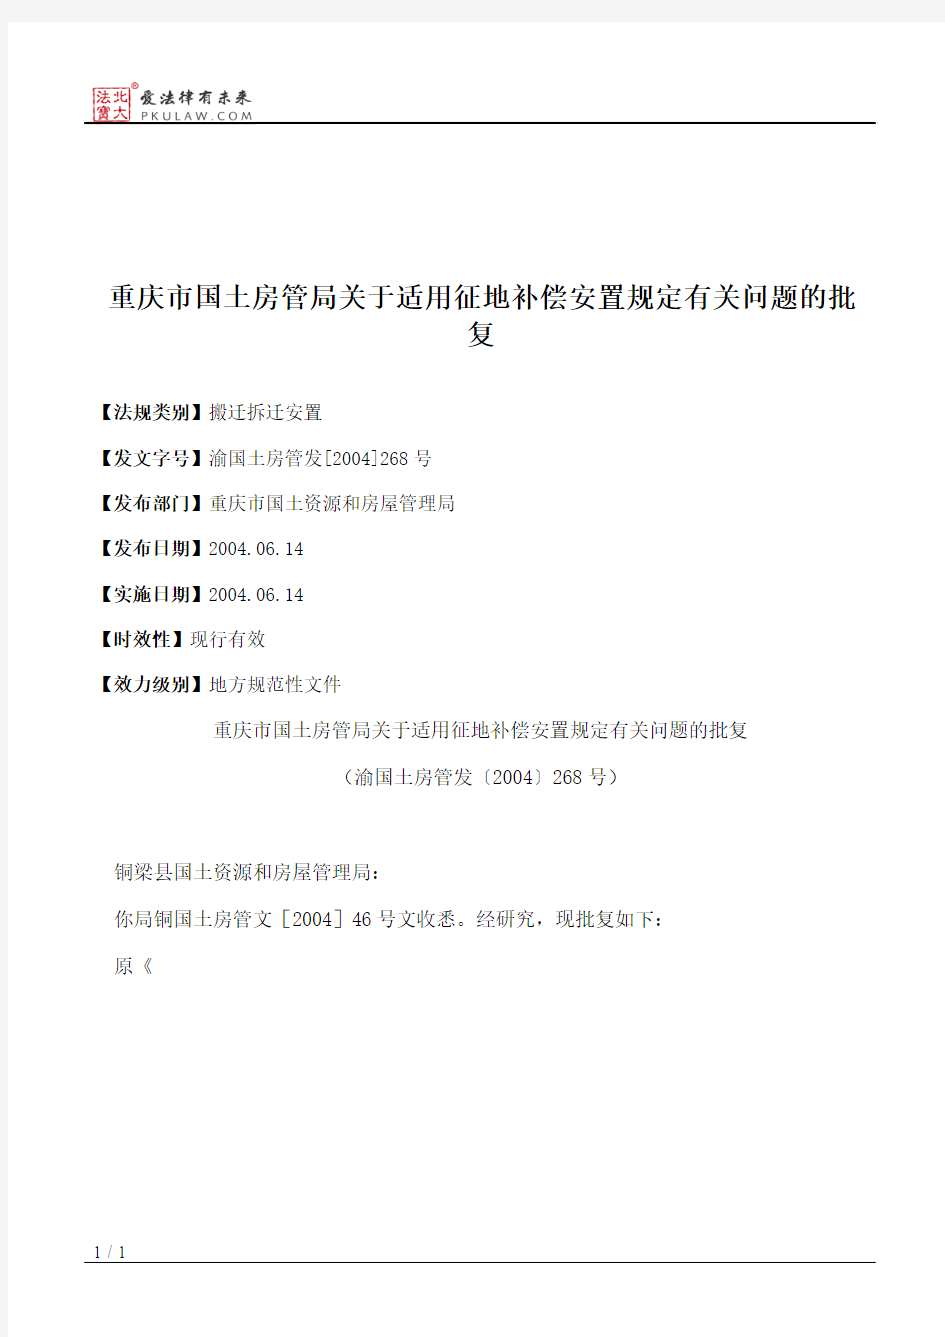 重庆市国土房管局关于适用征地补偿安置规定有关问题的批复